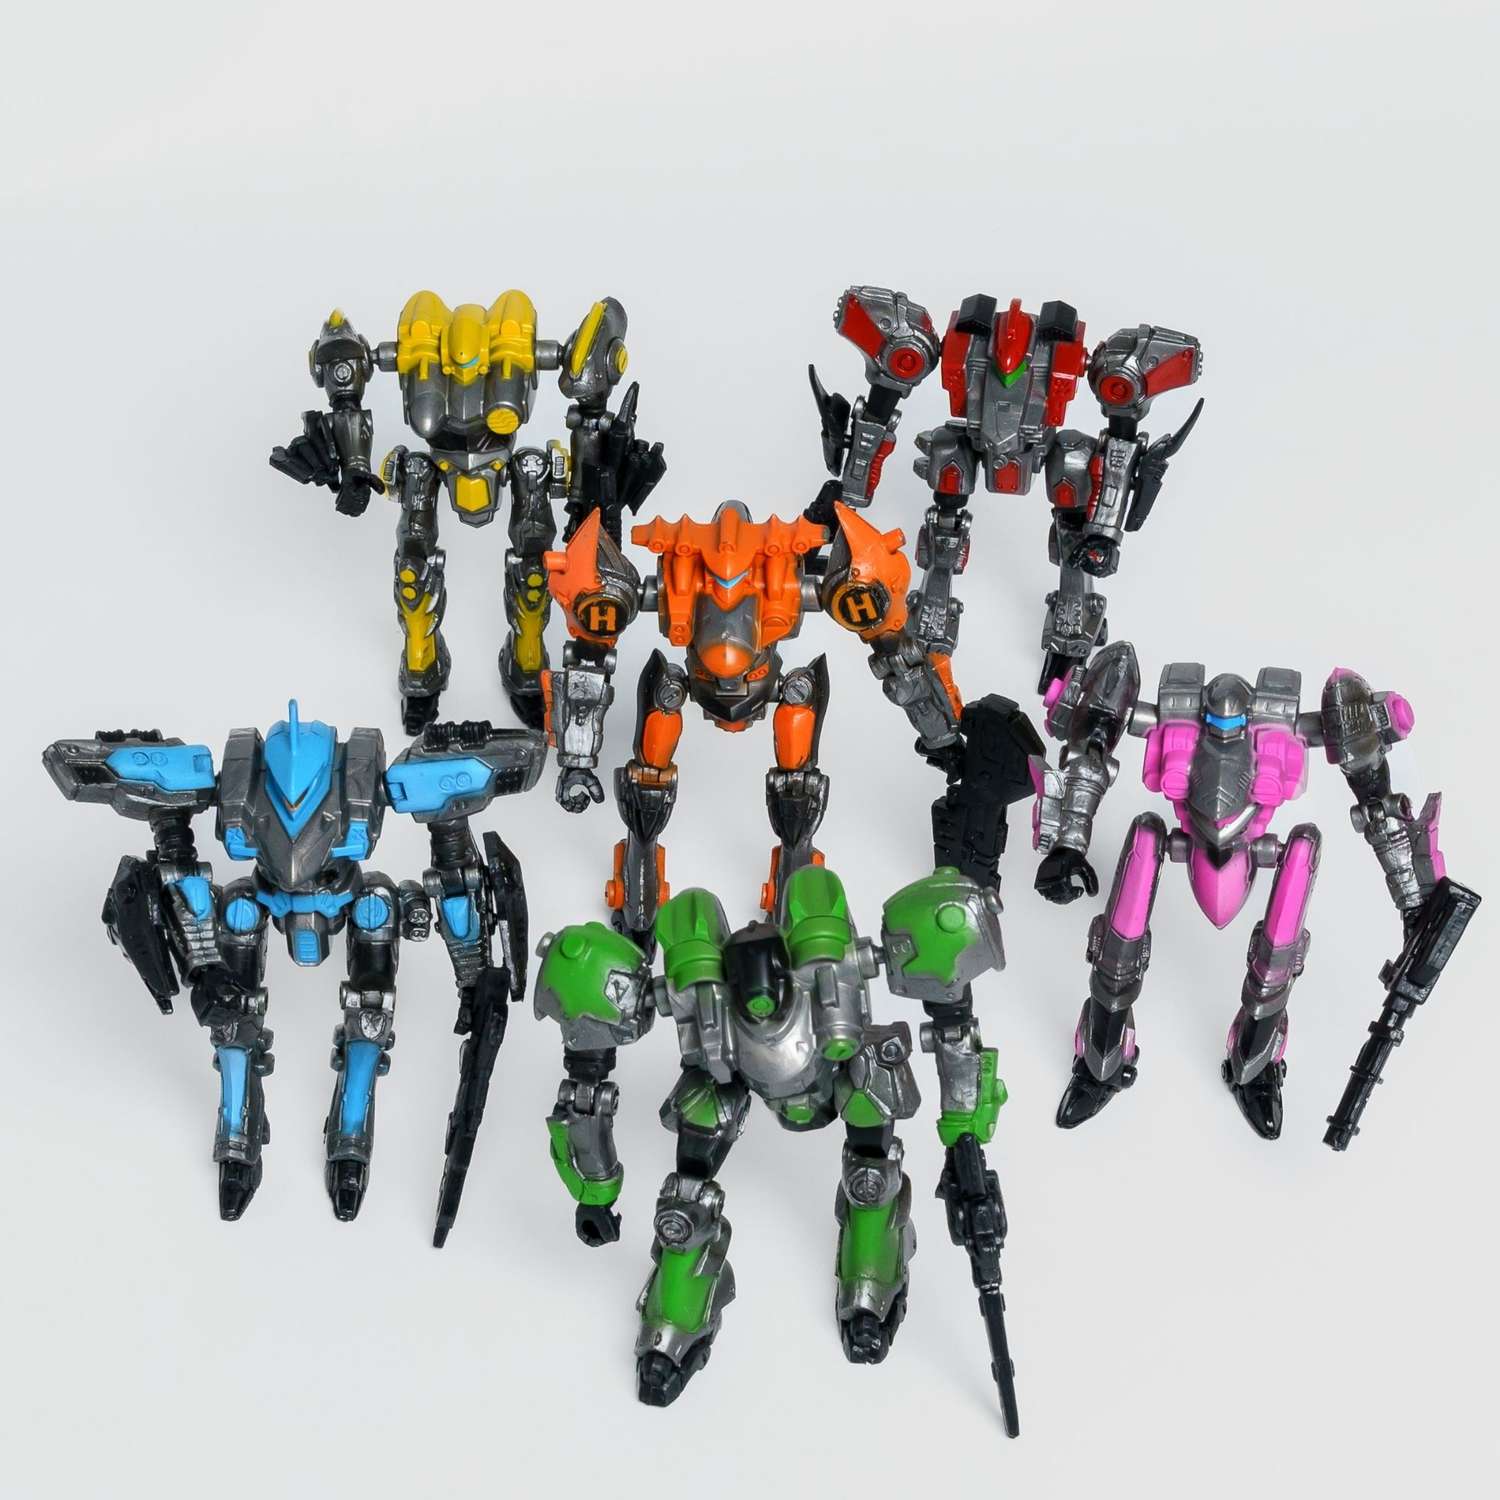 Роботы CyberCode 6 фигурок игрушки для детей развивающие пластиковые коллекционные интересные. 8см - фото 1